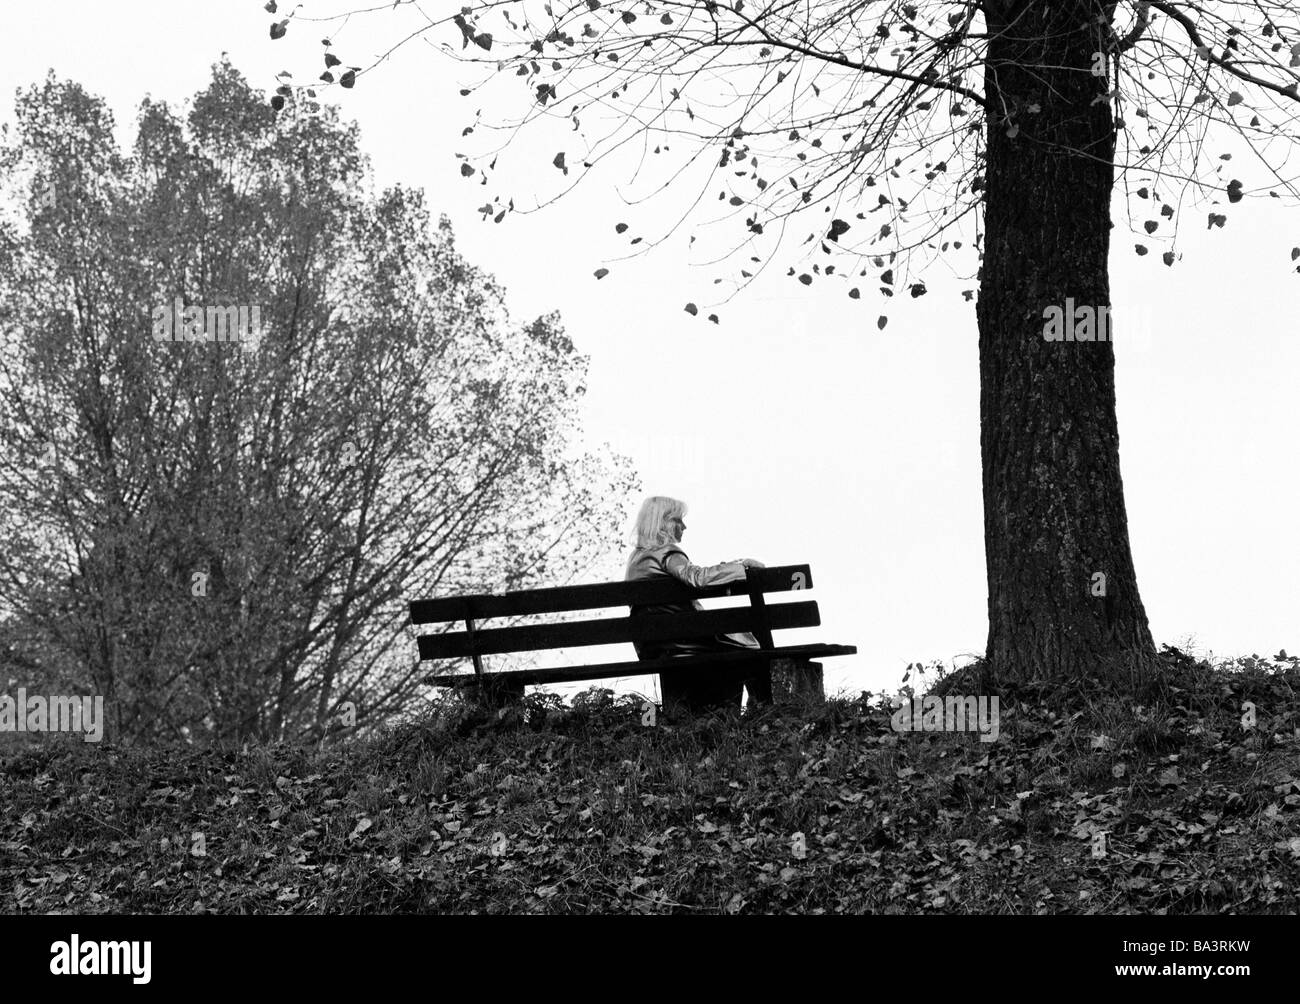 Ottanta, foto in bianco e nero, simbolico e solitudine, giovane donna seduta su una panchina sotto un albero autunnale, retroilluminazione, silhouette, di età compresa tra i 25 ed i 35 anni, Elisabeth Foto Stock